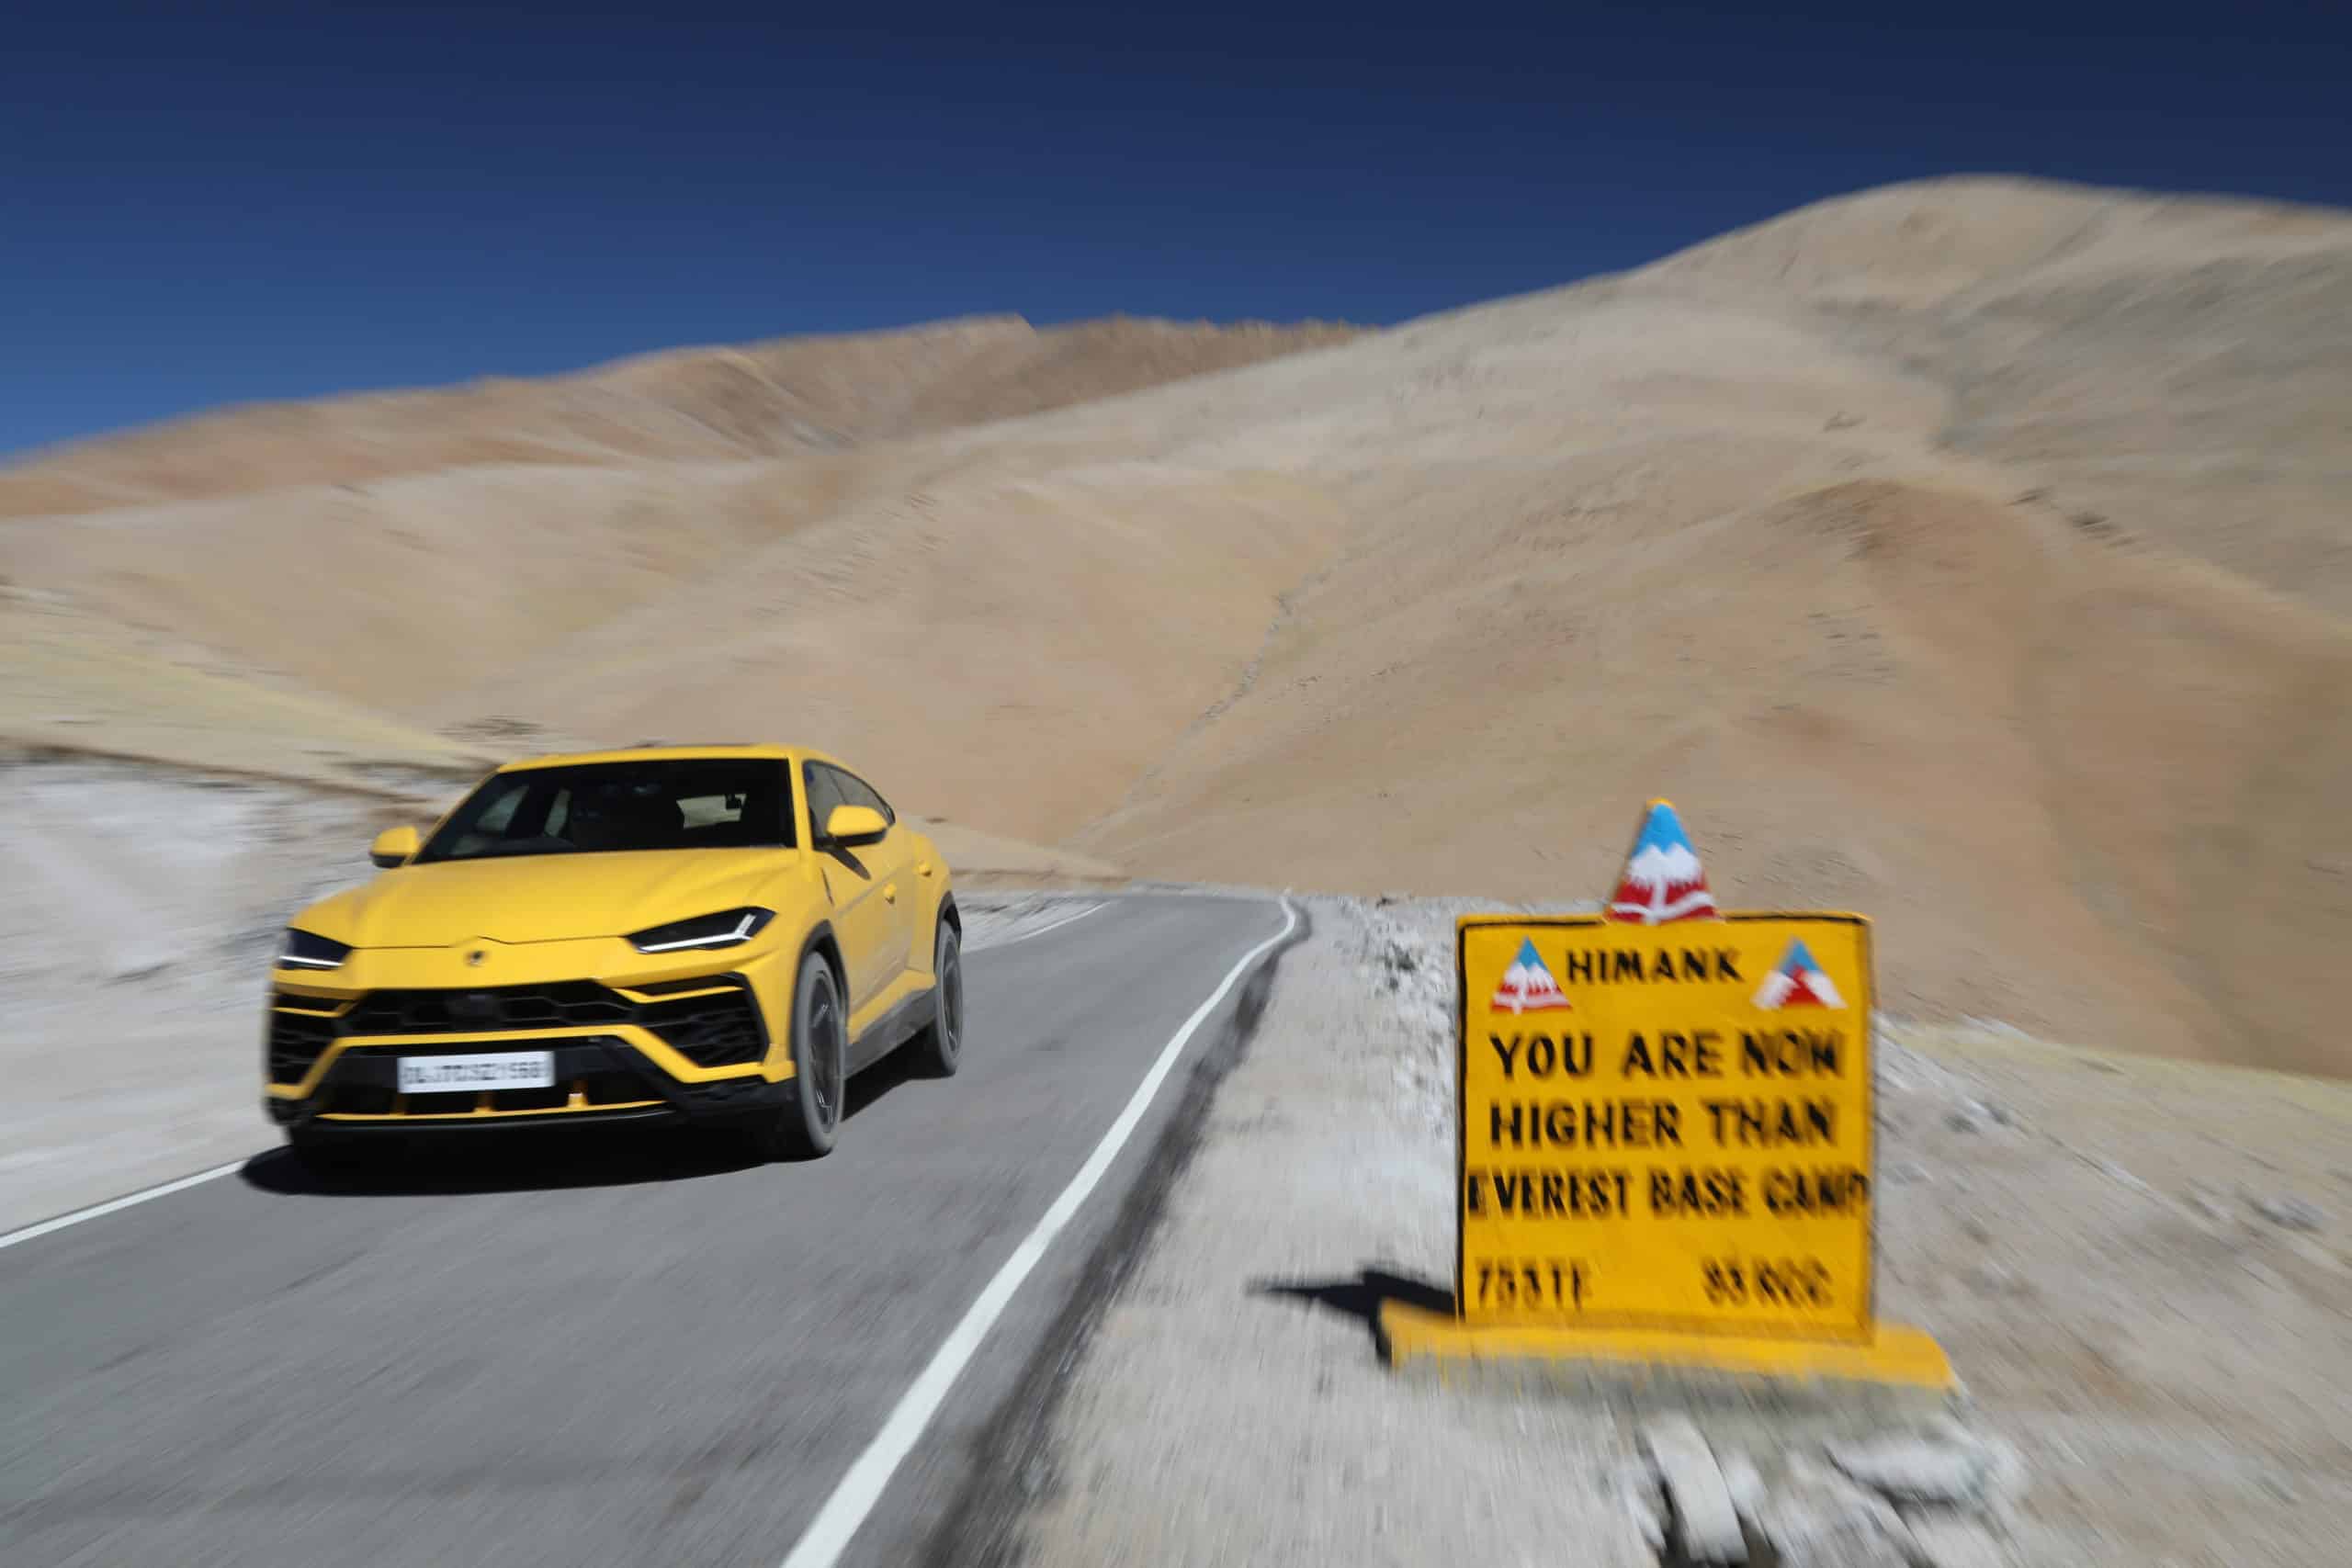 Lamborghini Urus höher als Everest Base Camp